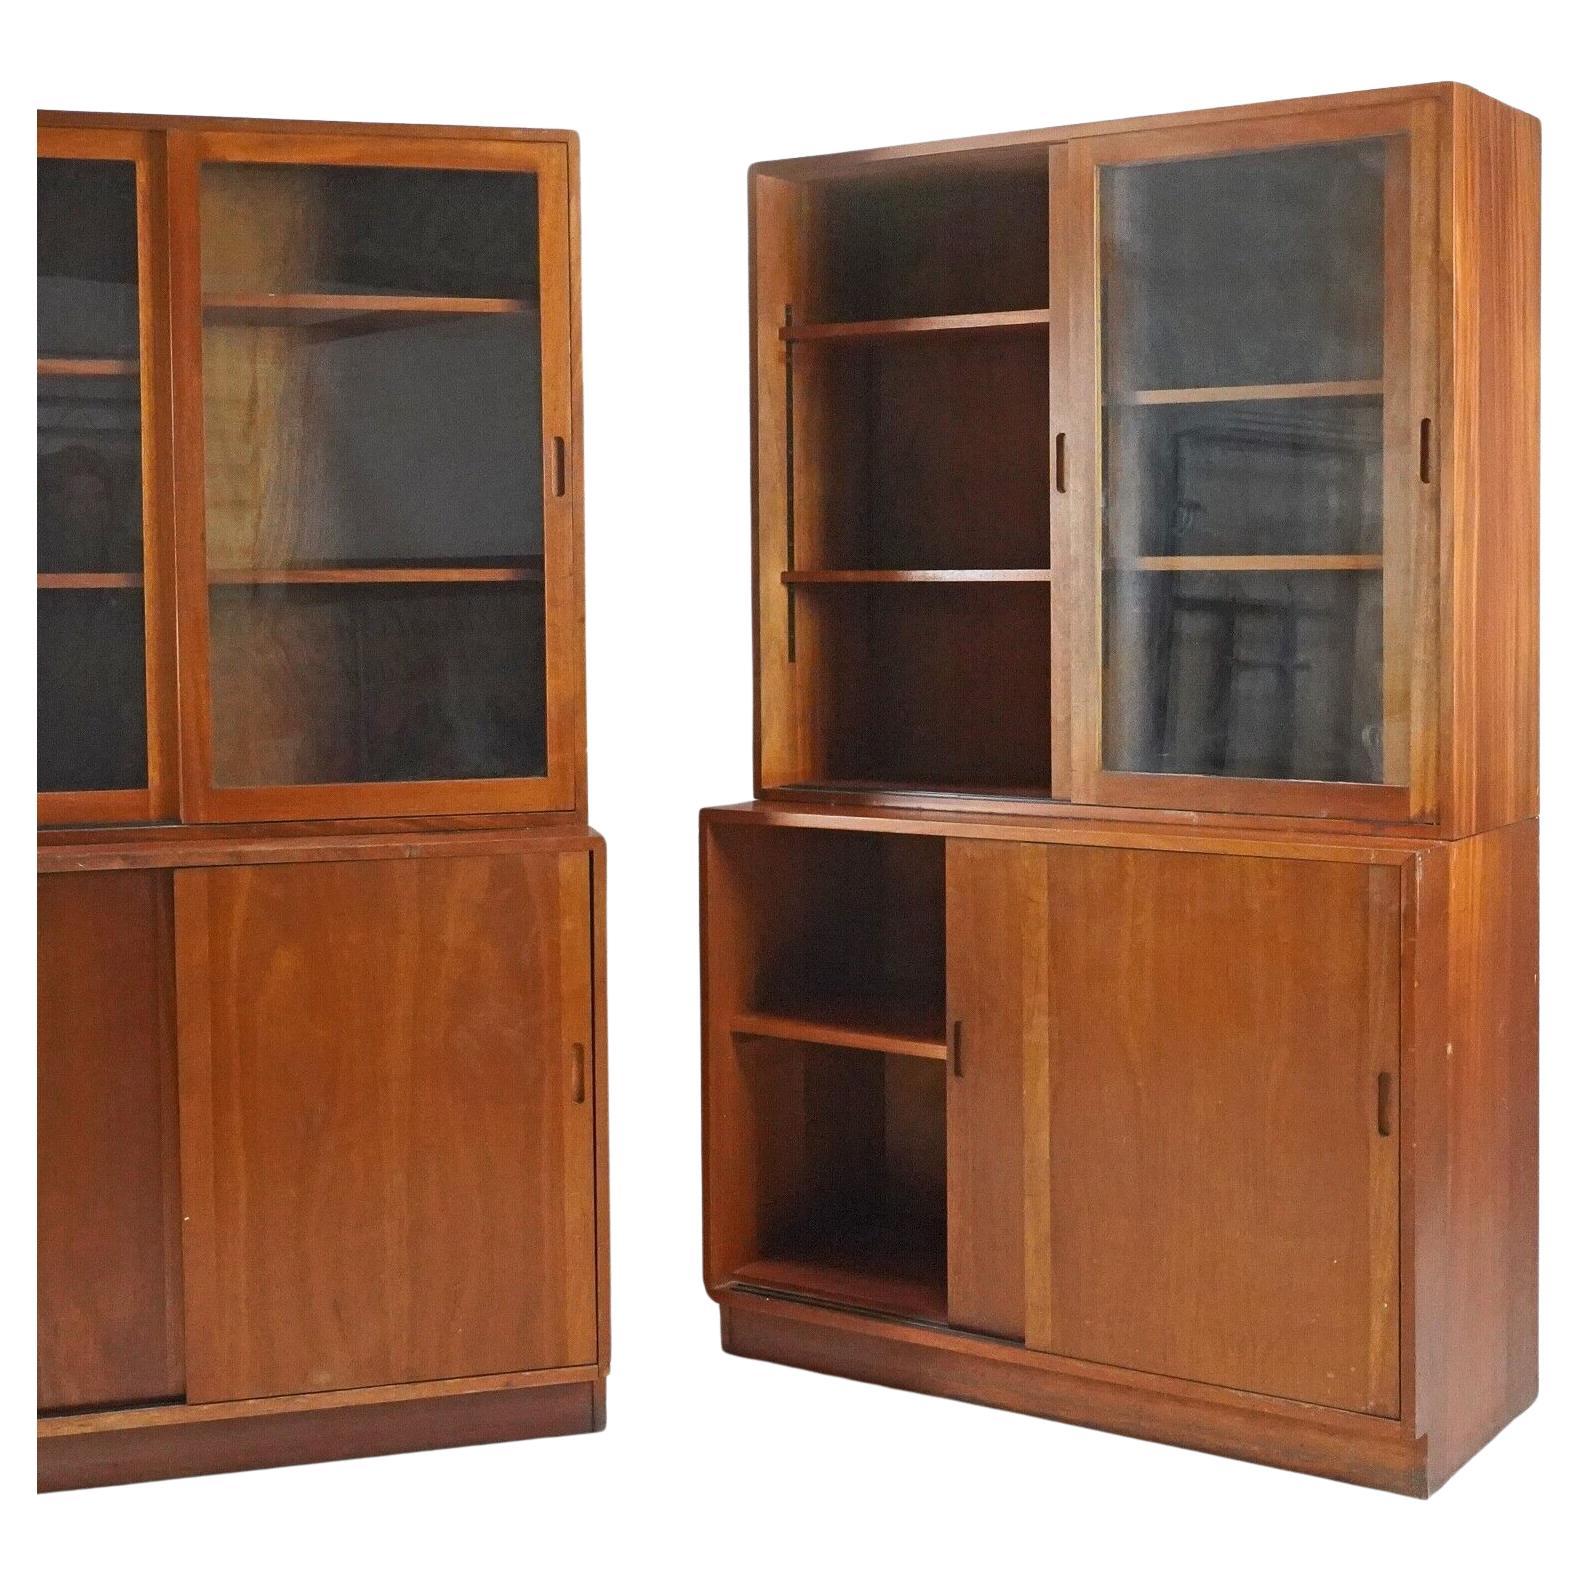 Vintage 1950's Teak Glazed Display Cabinet Kitchen Storage Unit -Linen Cupboard